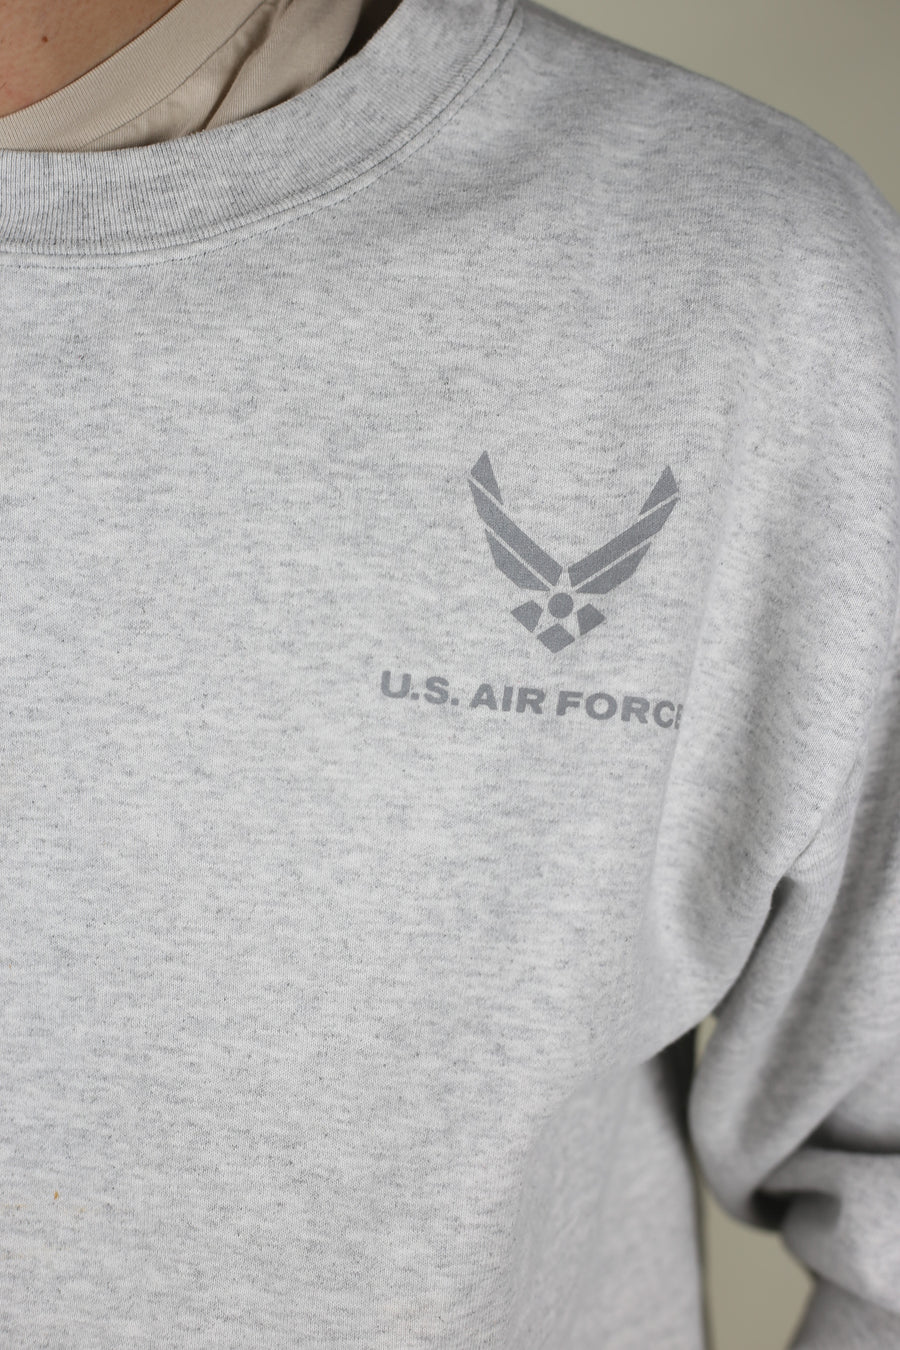 US AIR FORCE sweatshirt